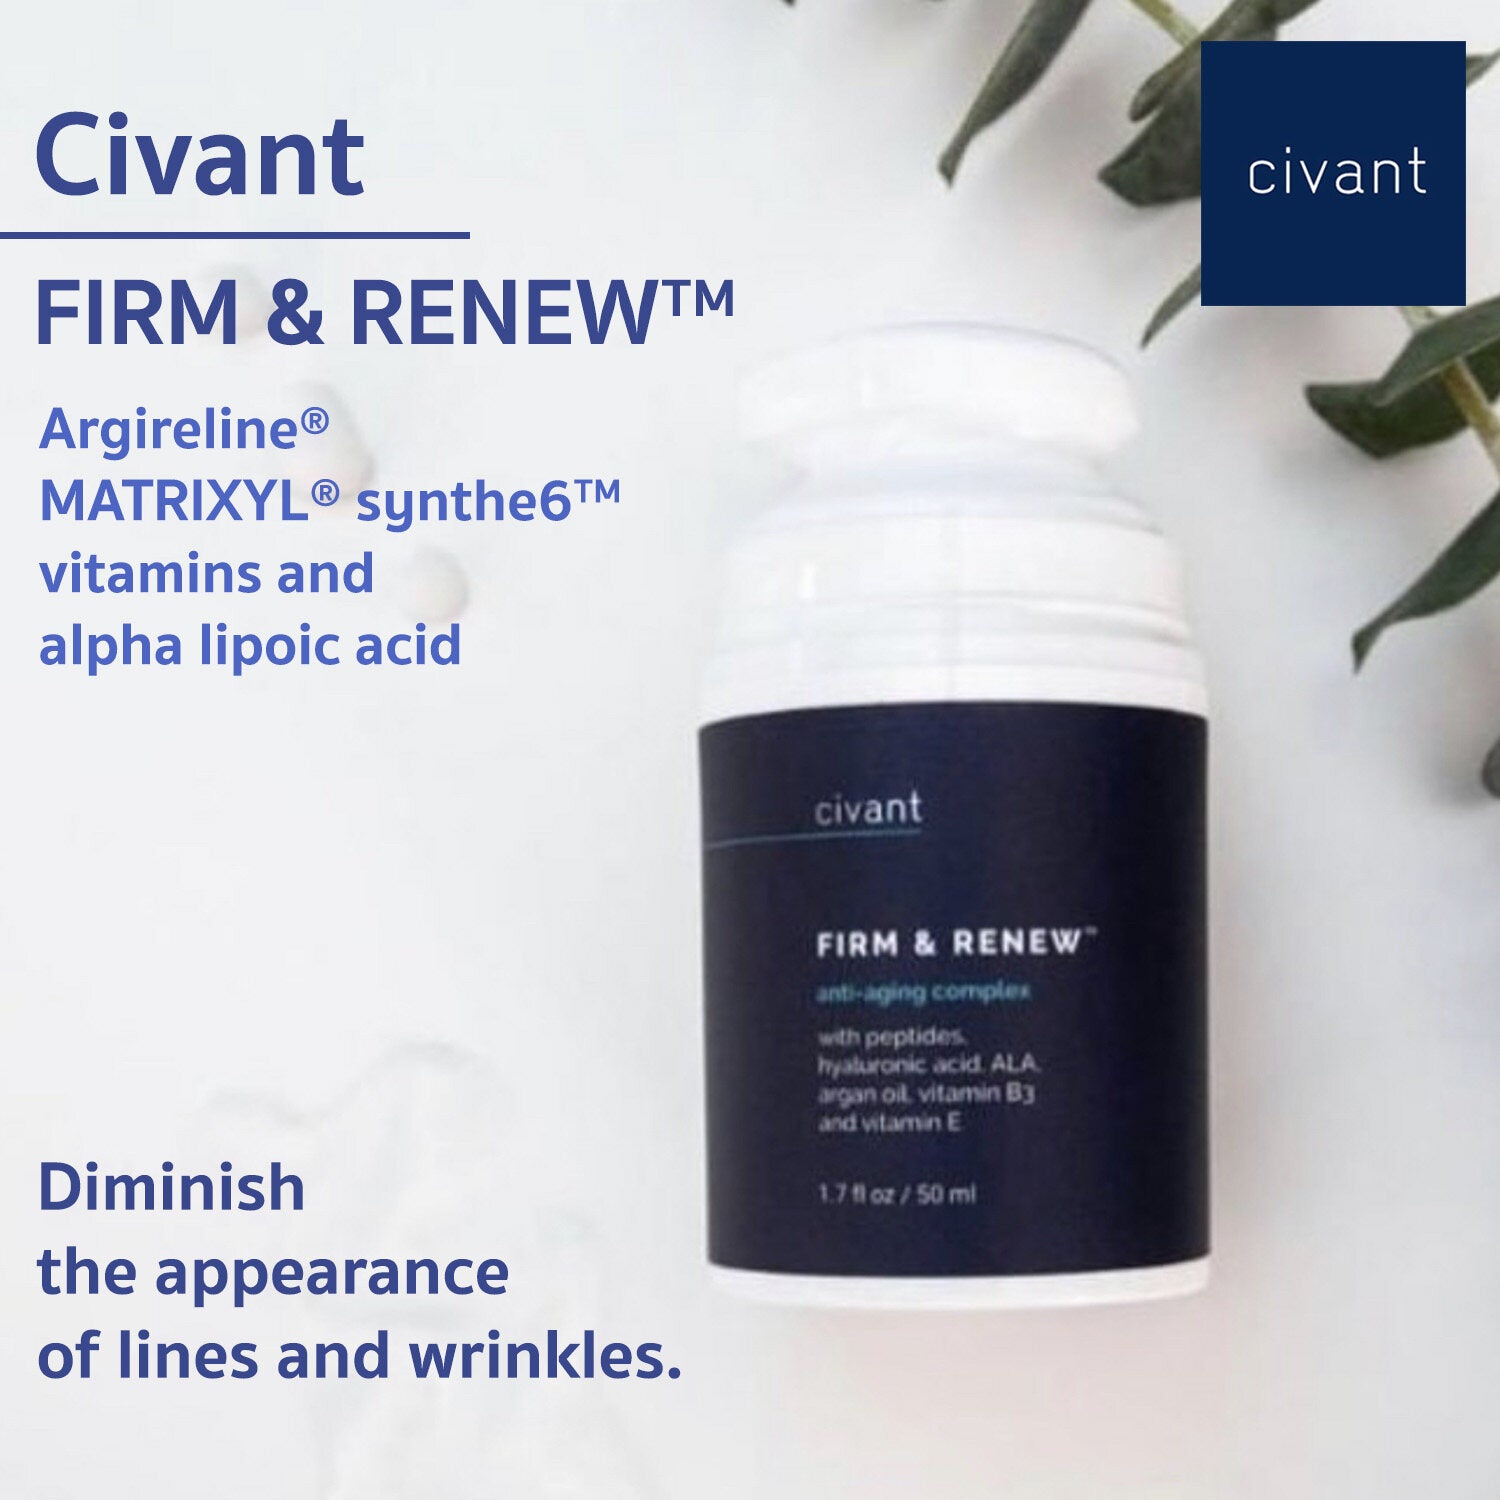 Civant Firm & Renew